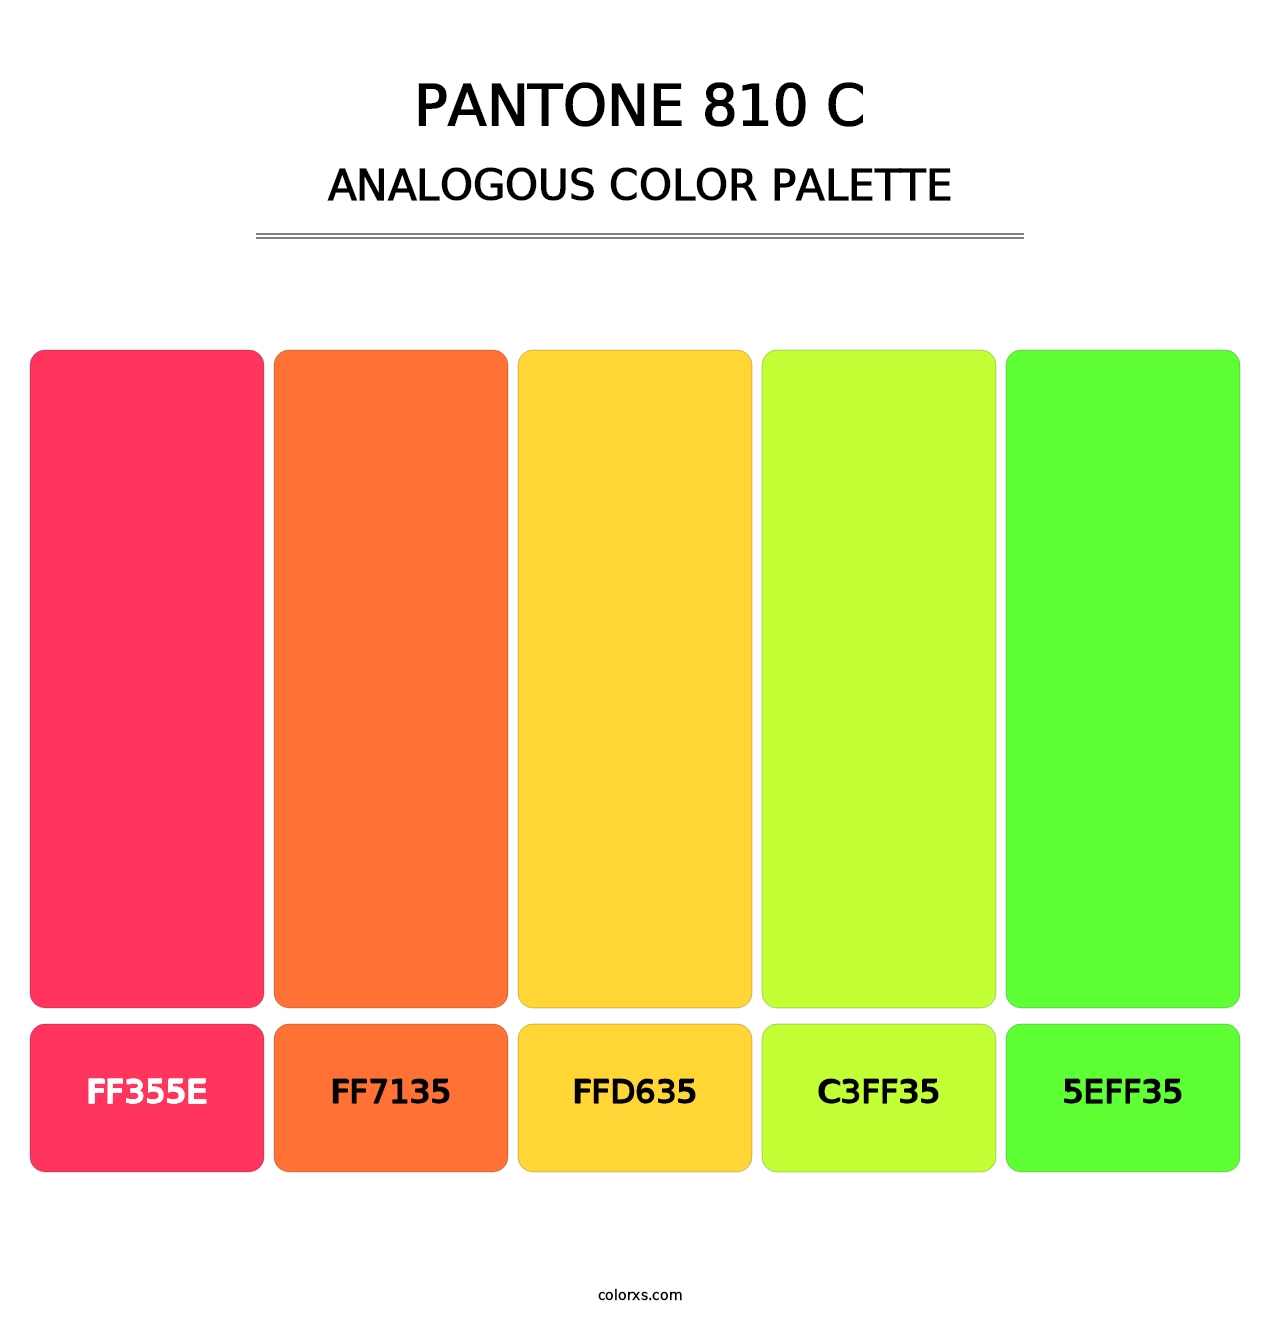 PANTONE 810 C - Analogous Color Palette